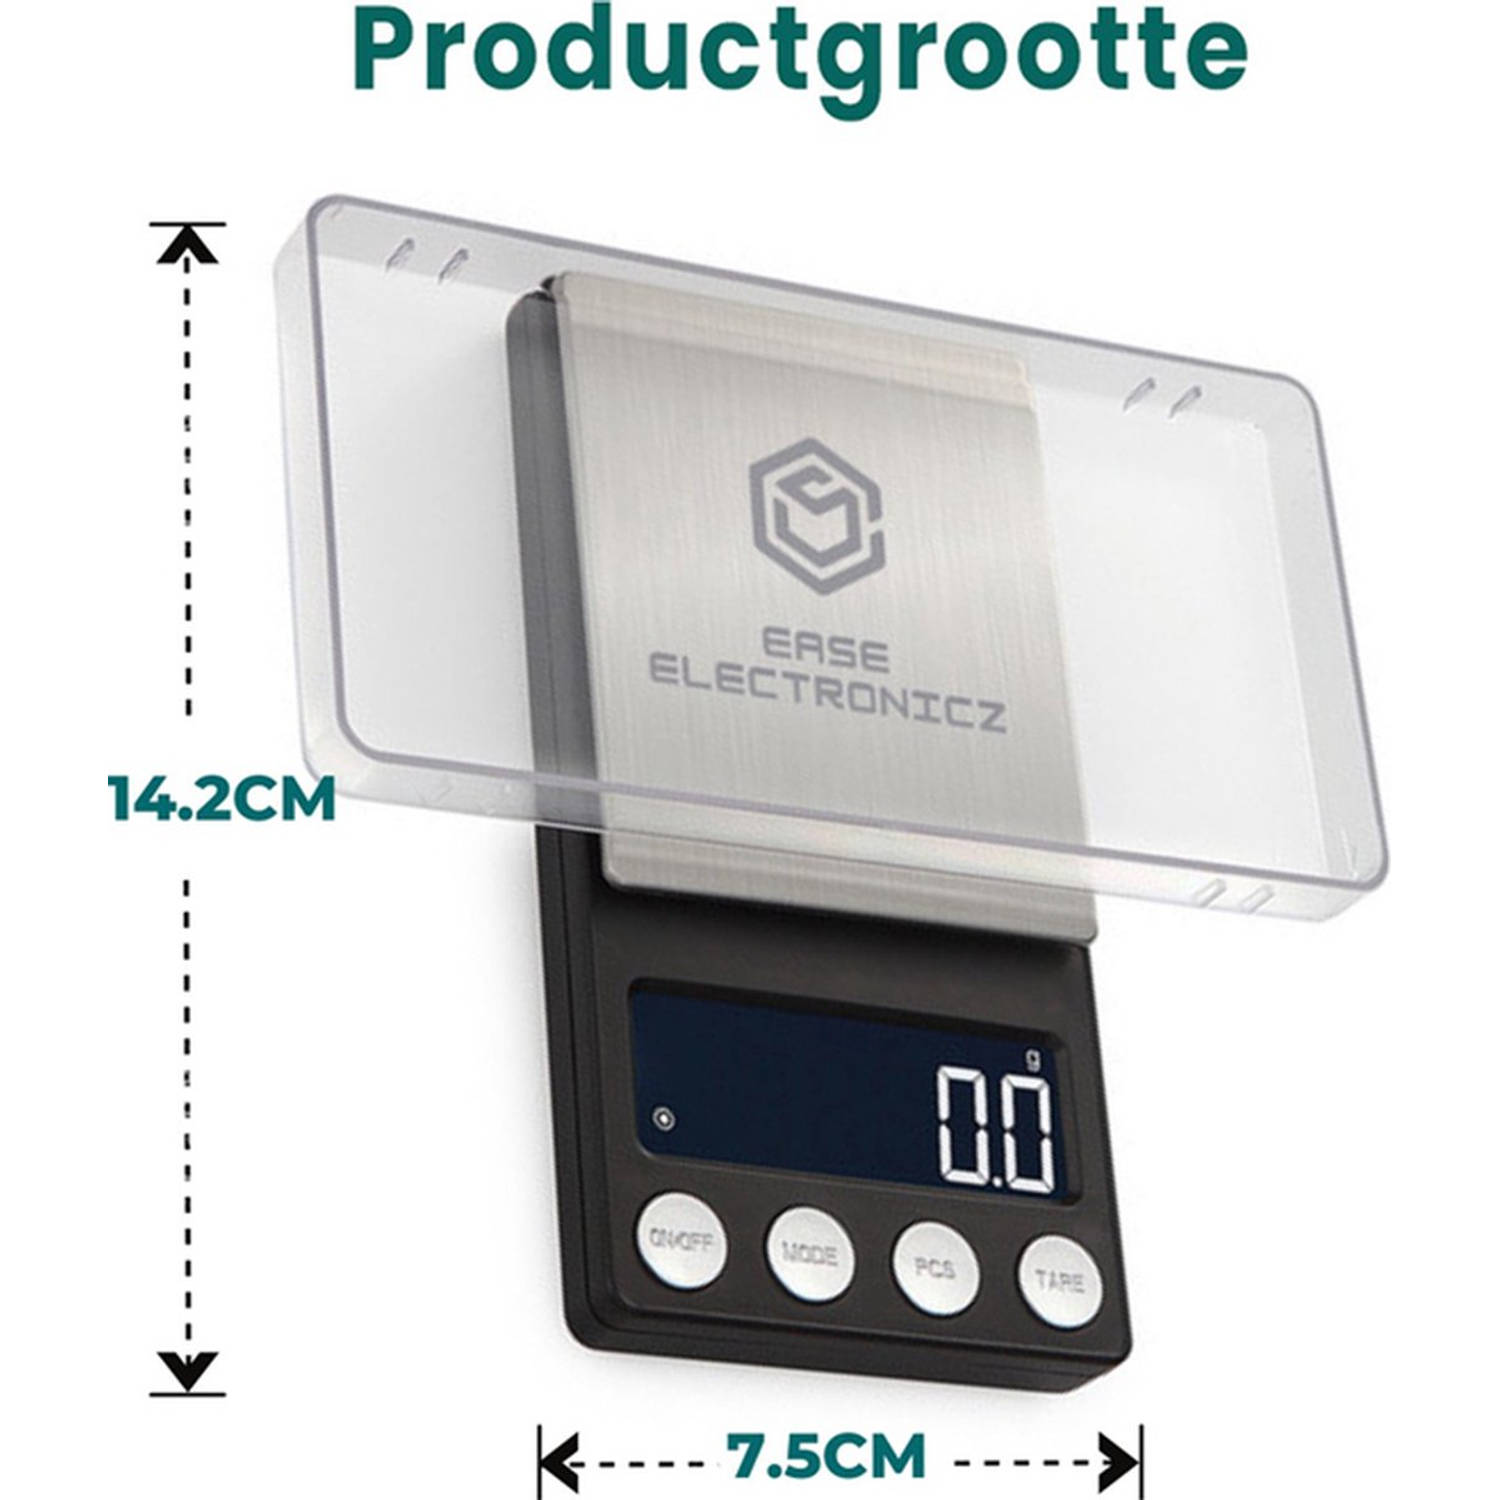 gebruik Pogo stick sprong extase Ease Electronicz digitale mini precisie keukenweegschaal - 0,01 tot 200 gram  - 14.2 x 7.5 cm - pocket scale op batterij | Blokker